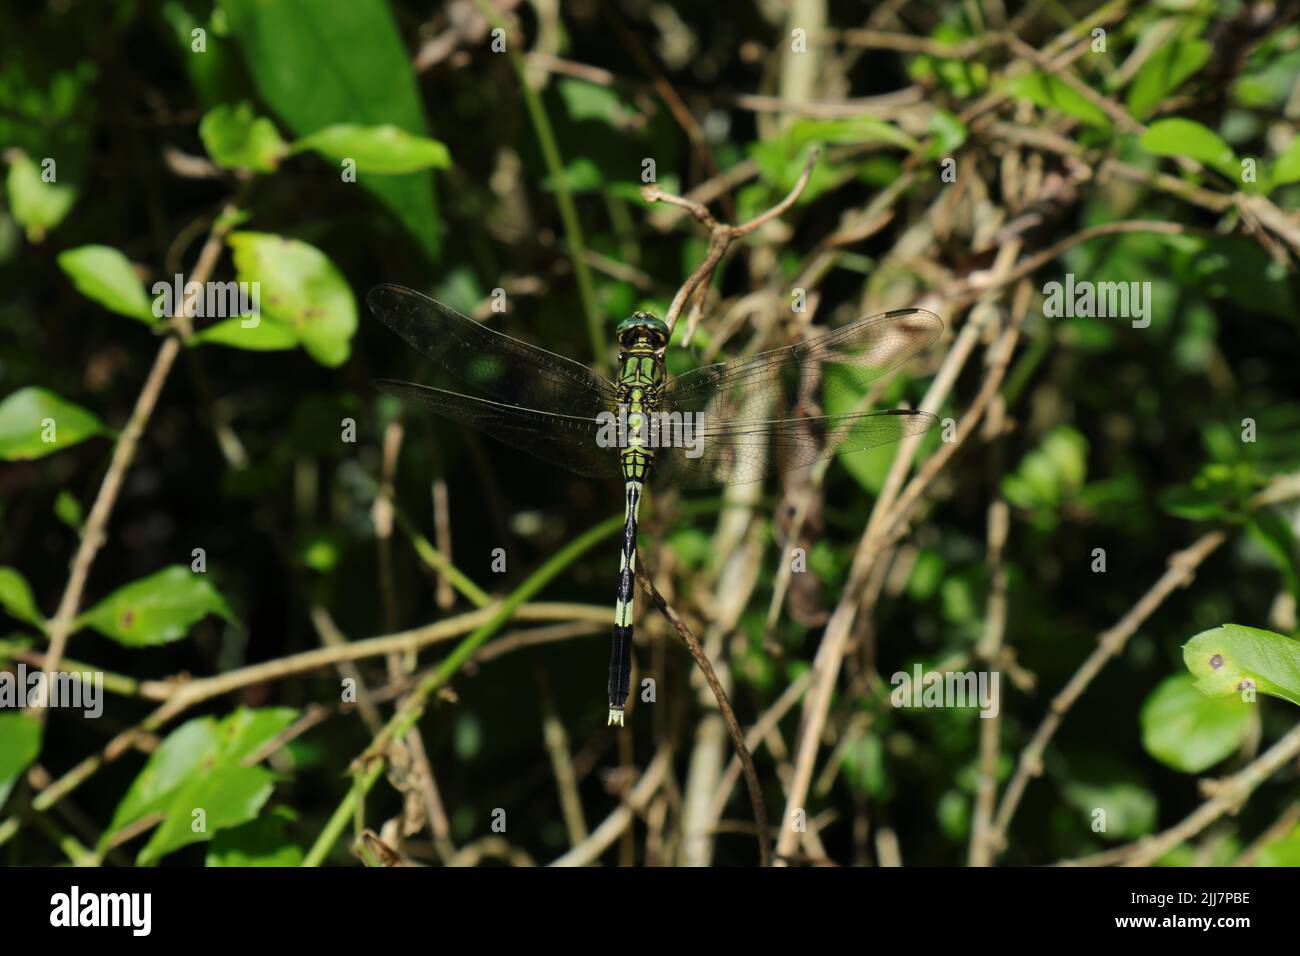 Vista de ángulo alto de una libélula verde y negra esperando en la parte superior de un tallo de un árbol en un día soleado Foto de stock